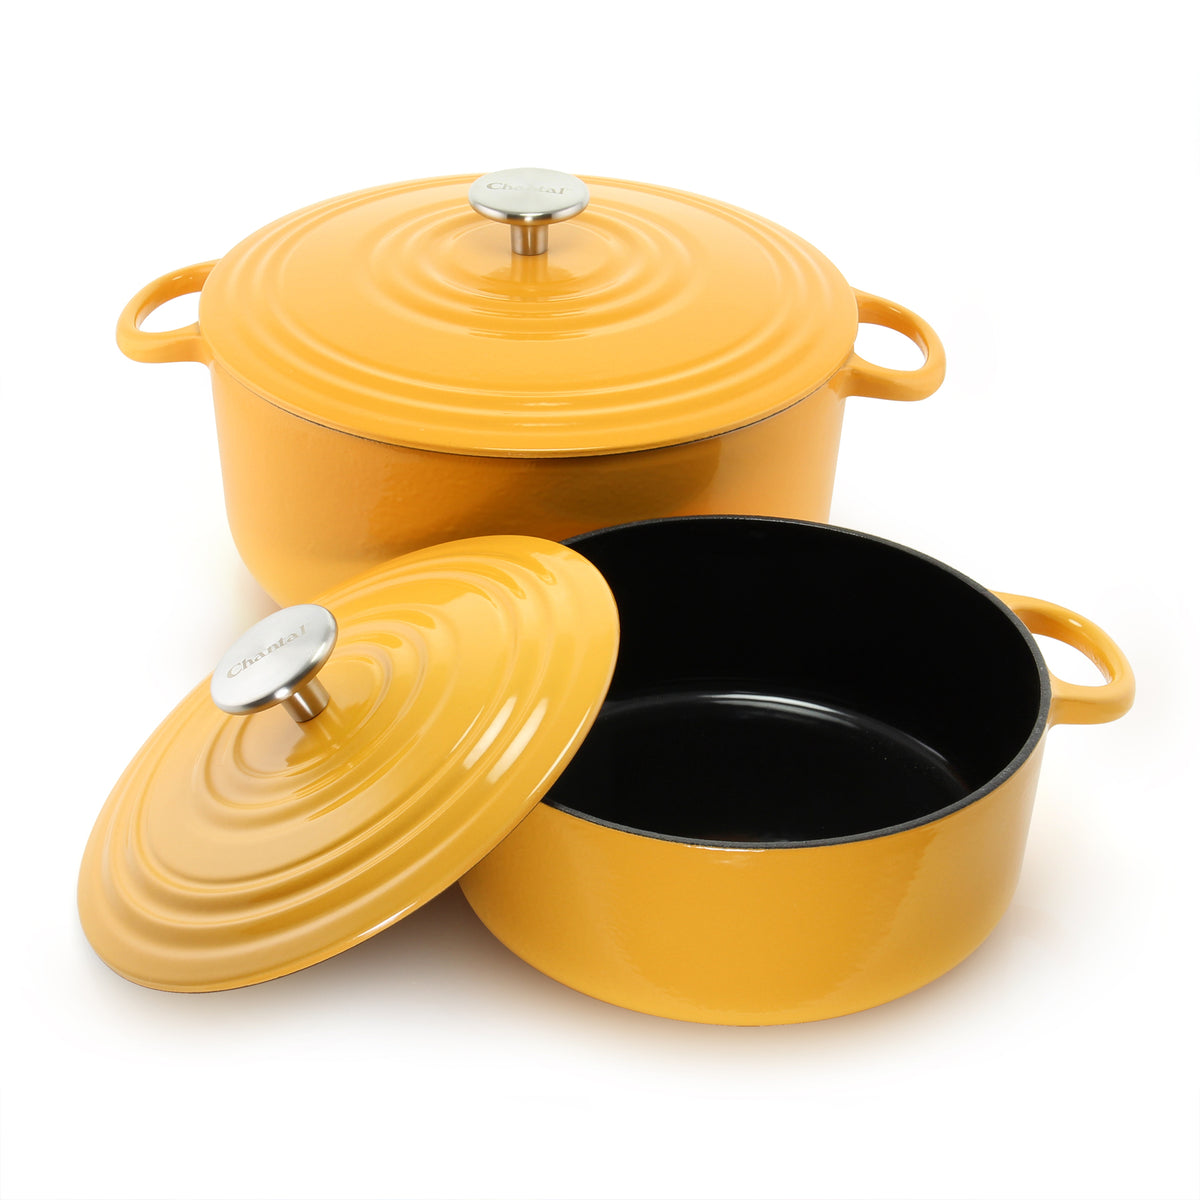 Summerset Enamel Cast Iron Dutch Oven Pan & Pot Casserole Skillet  (Non-Stick 5 Quart, Orange)